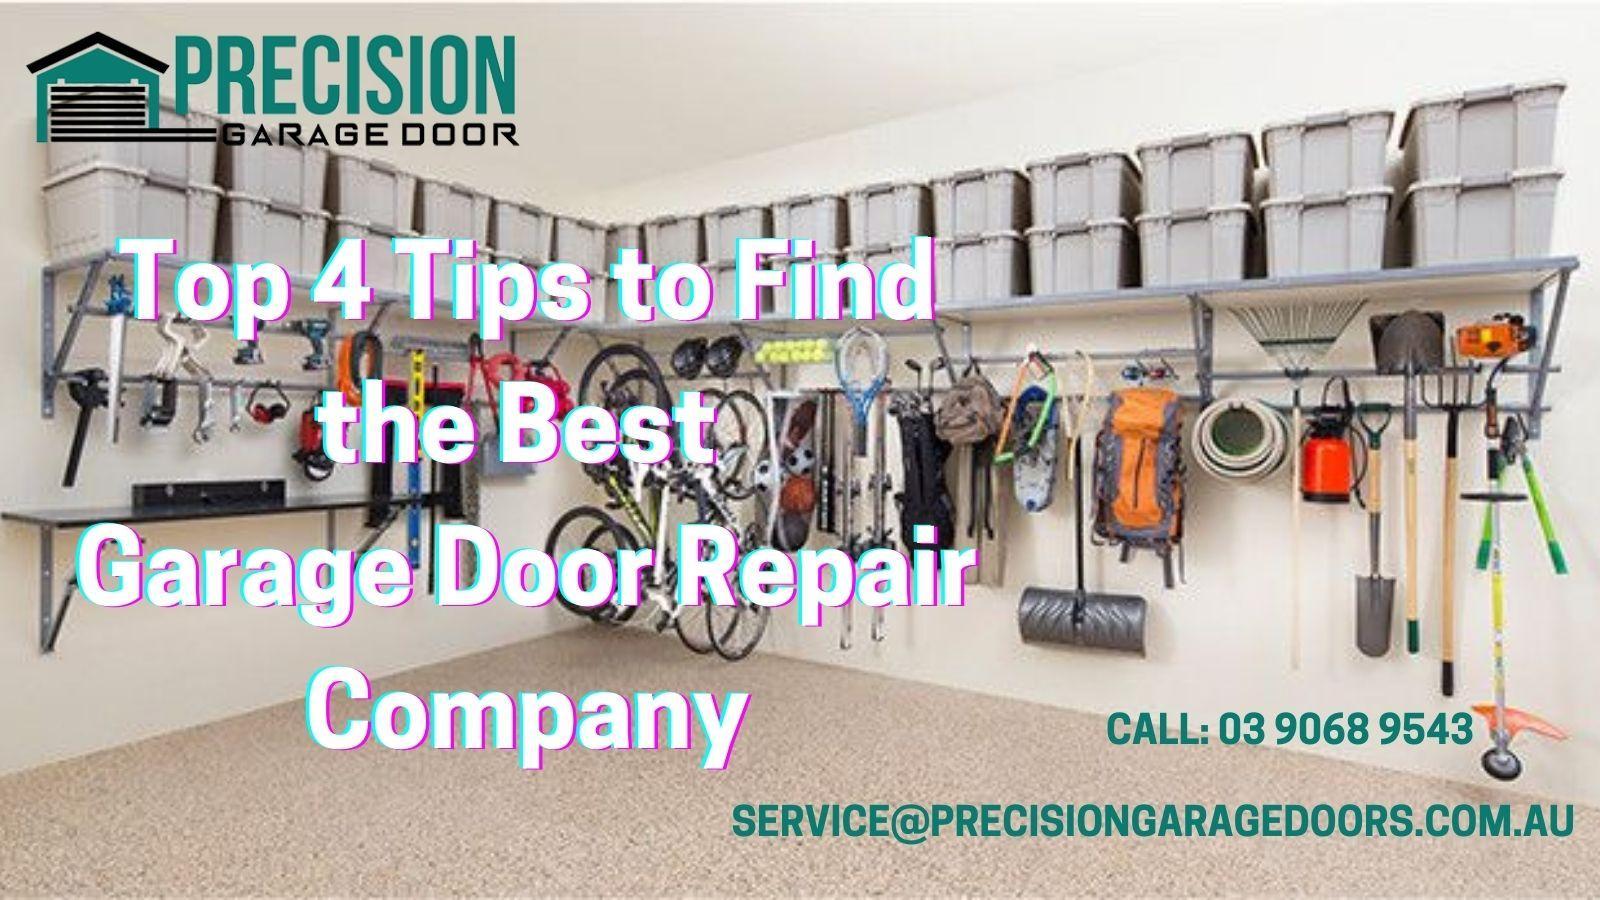 Top 4 Tips to Find the Best Garage Door Repair Company